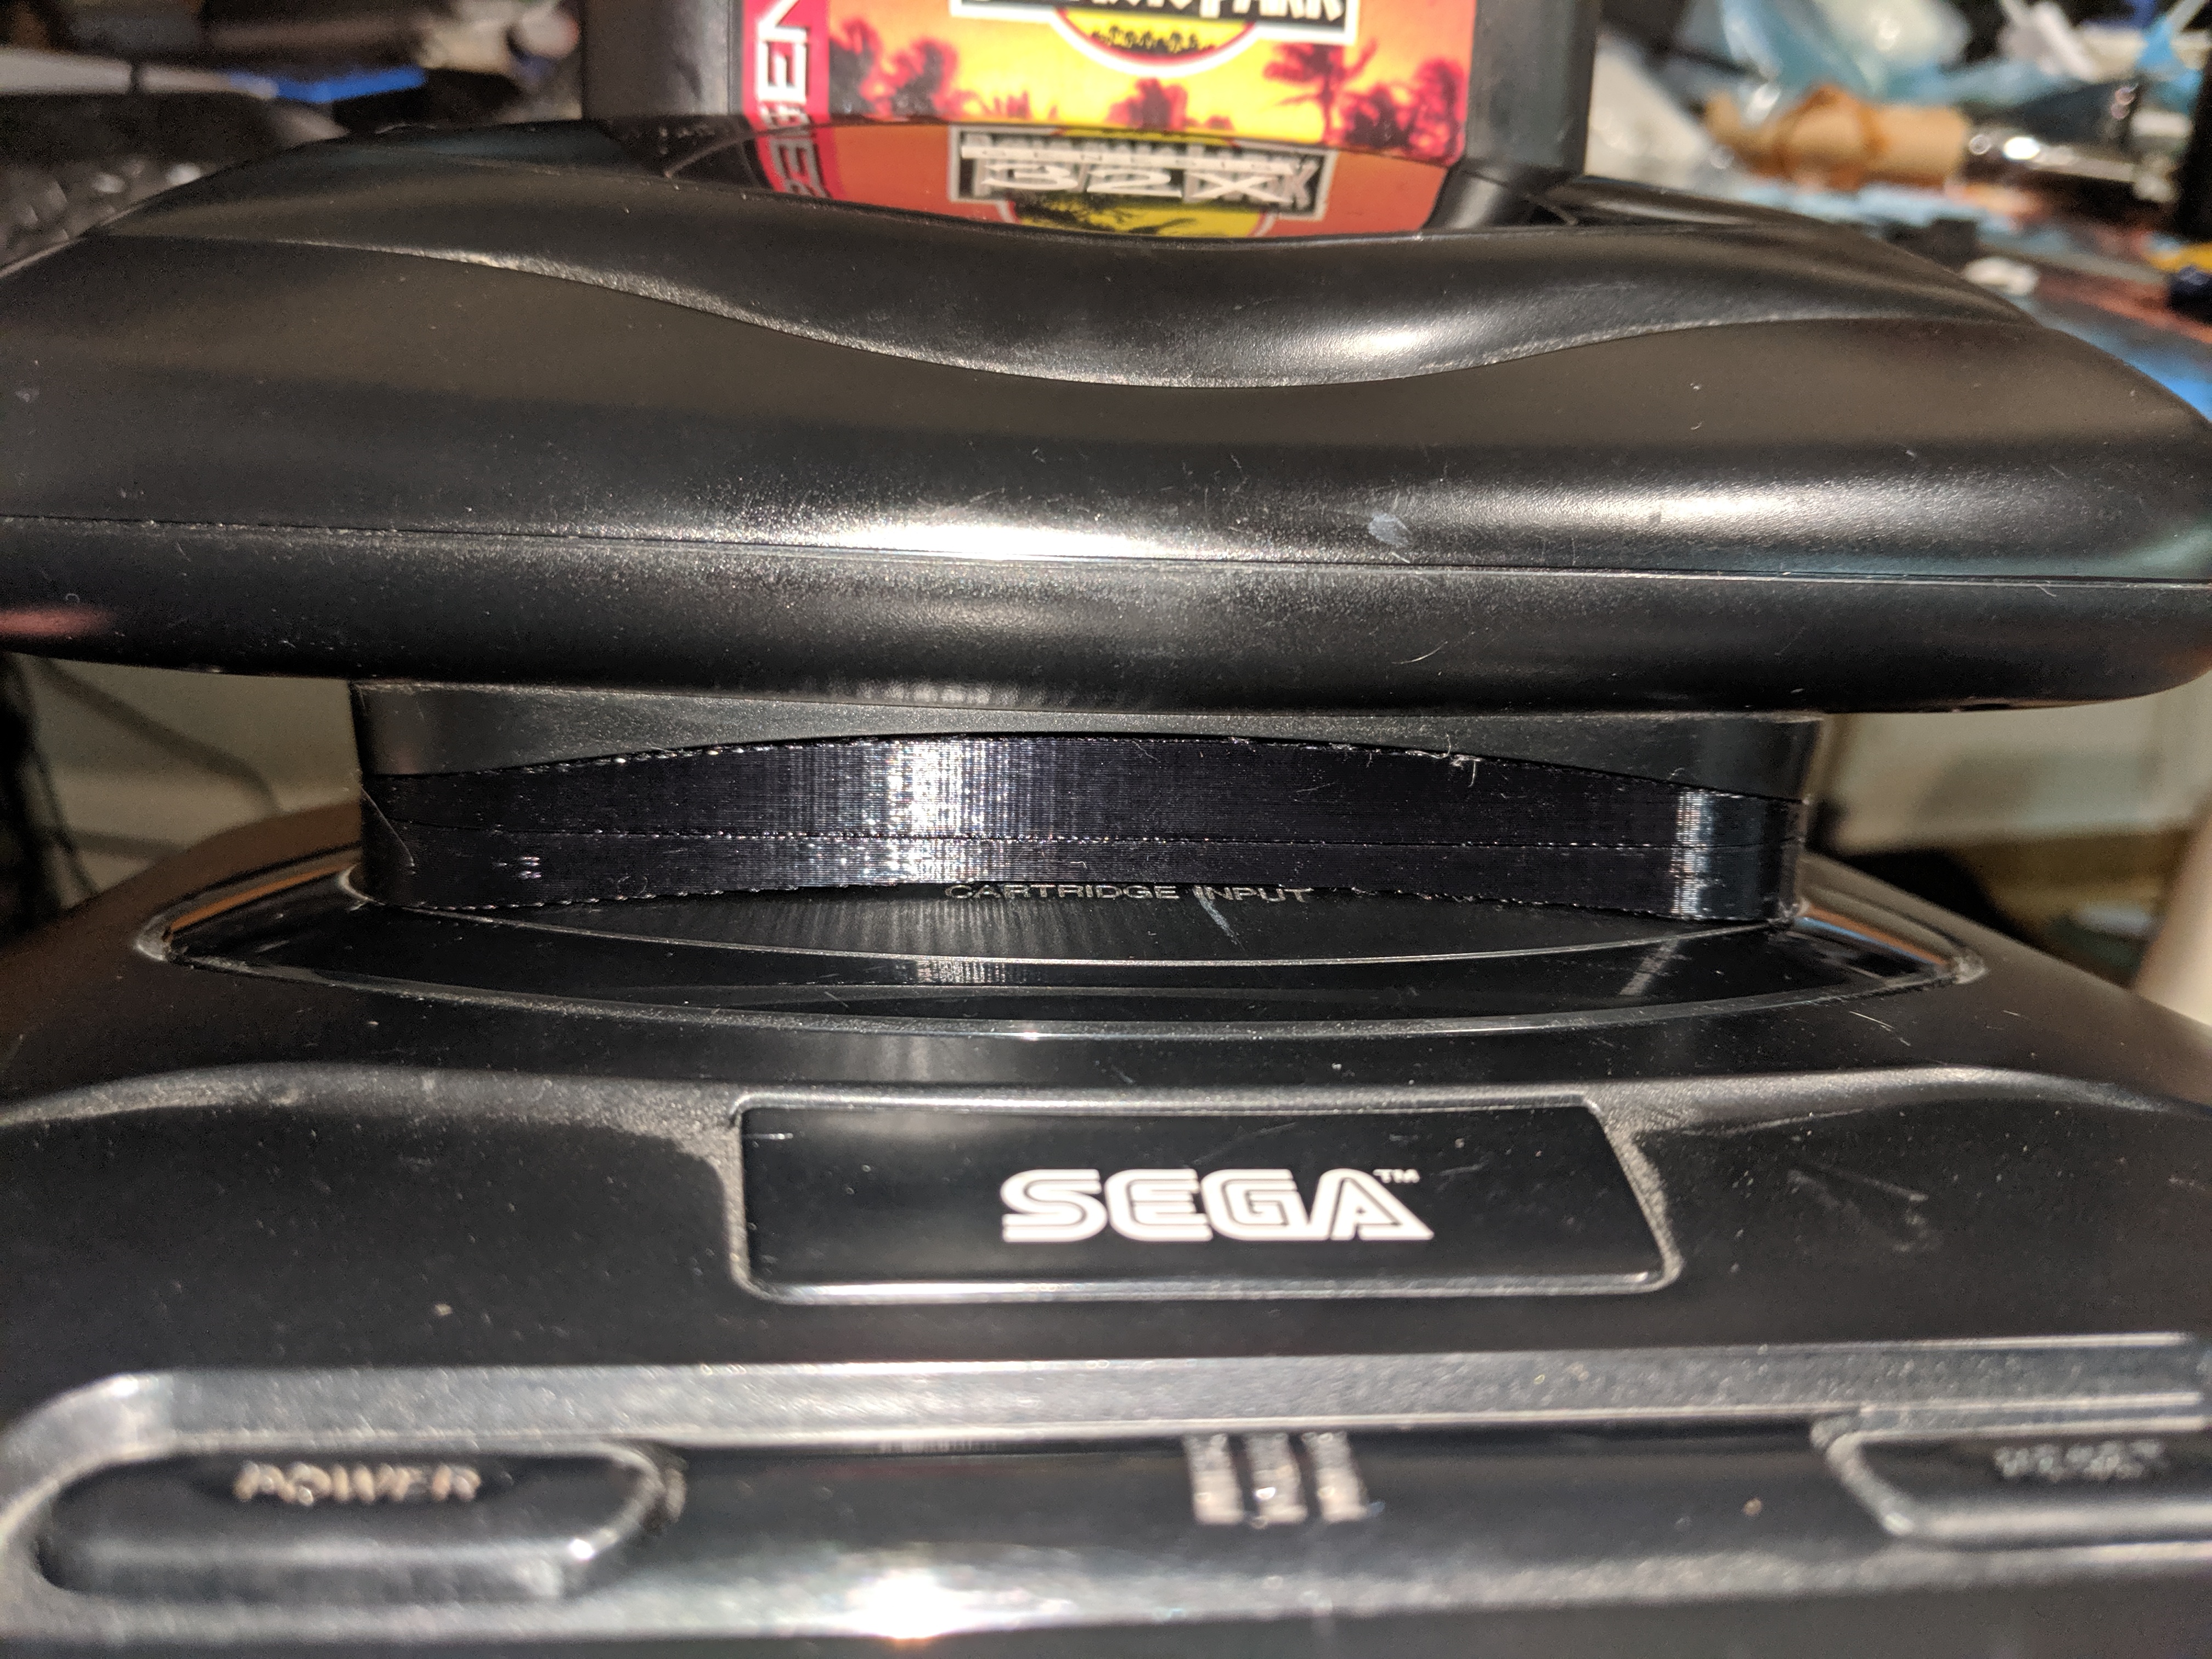 Sega 32x Riser for Genesis Model 2